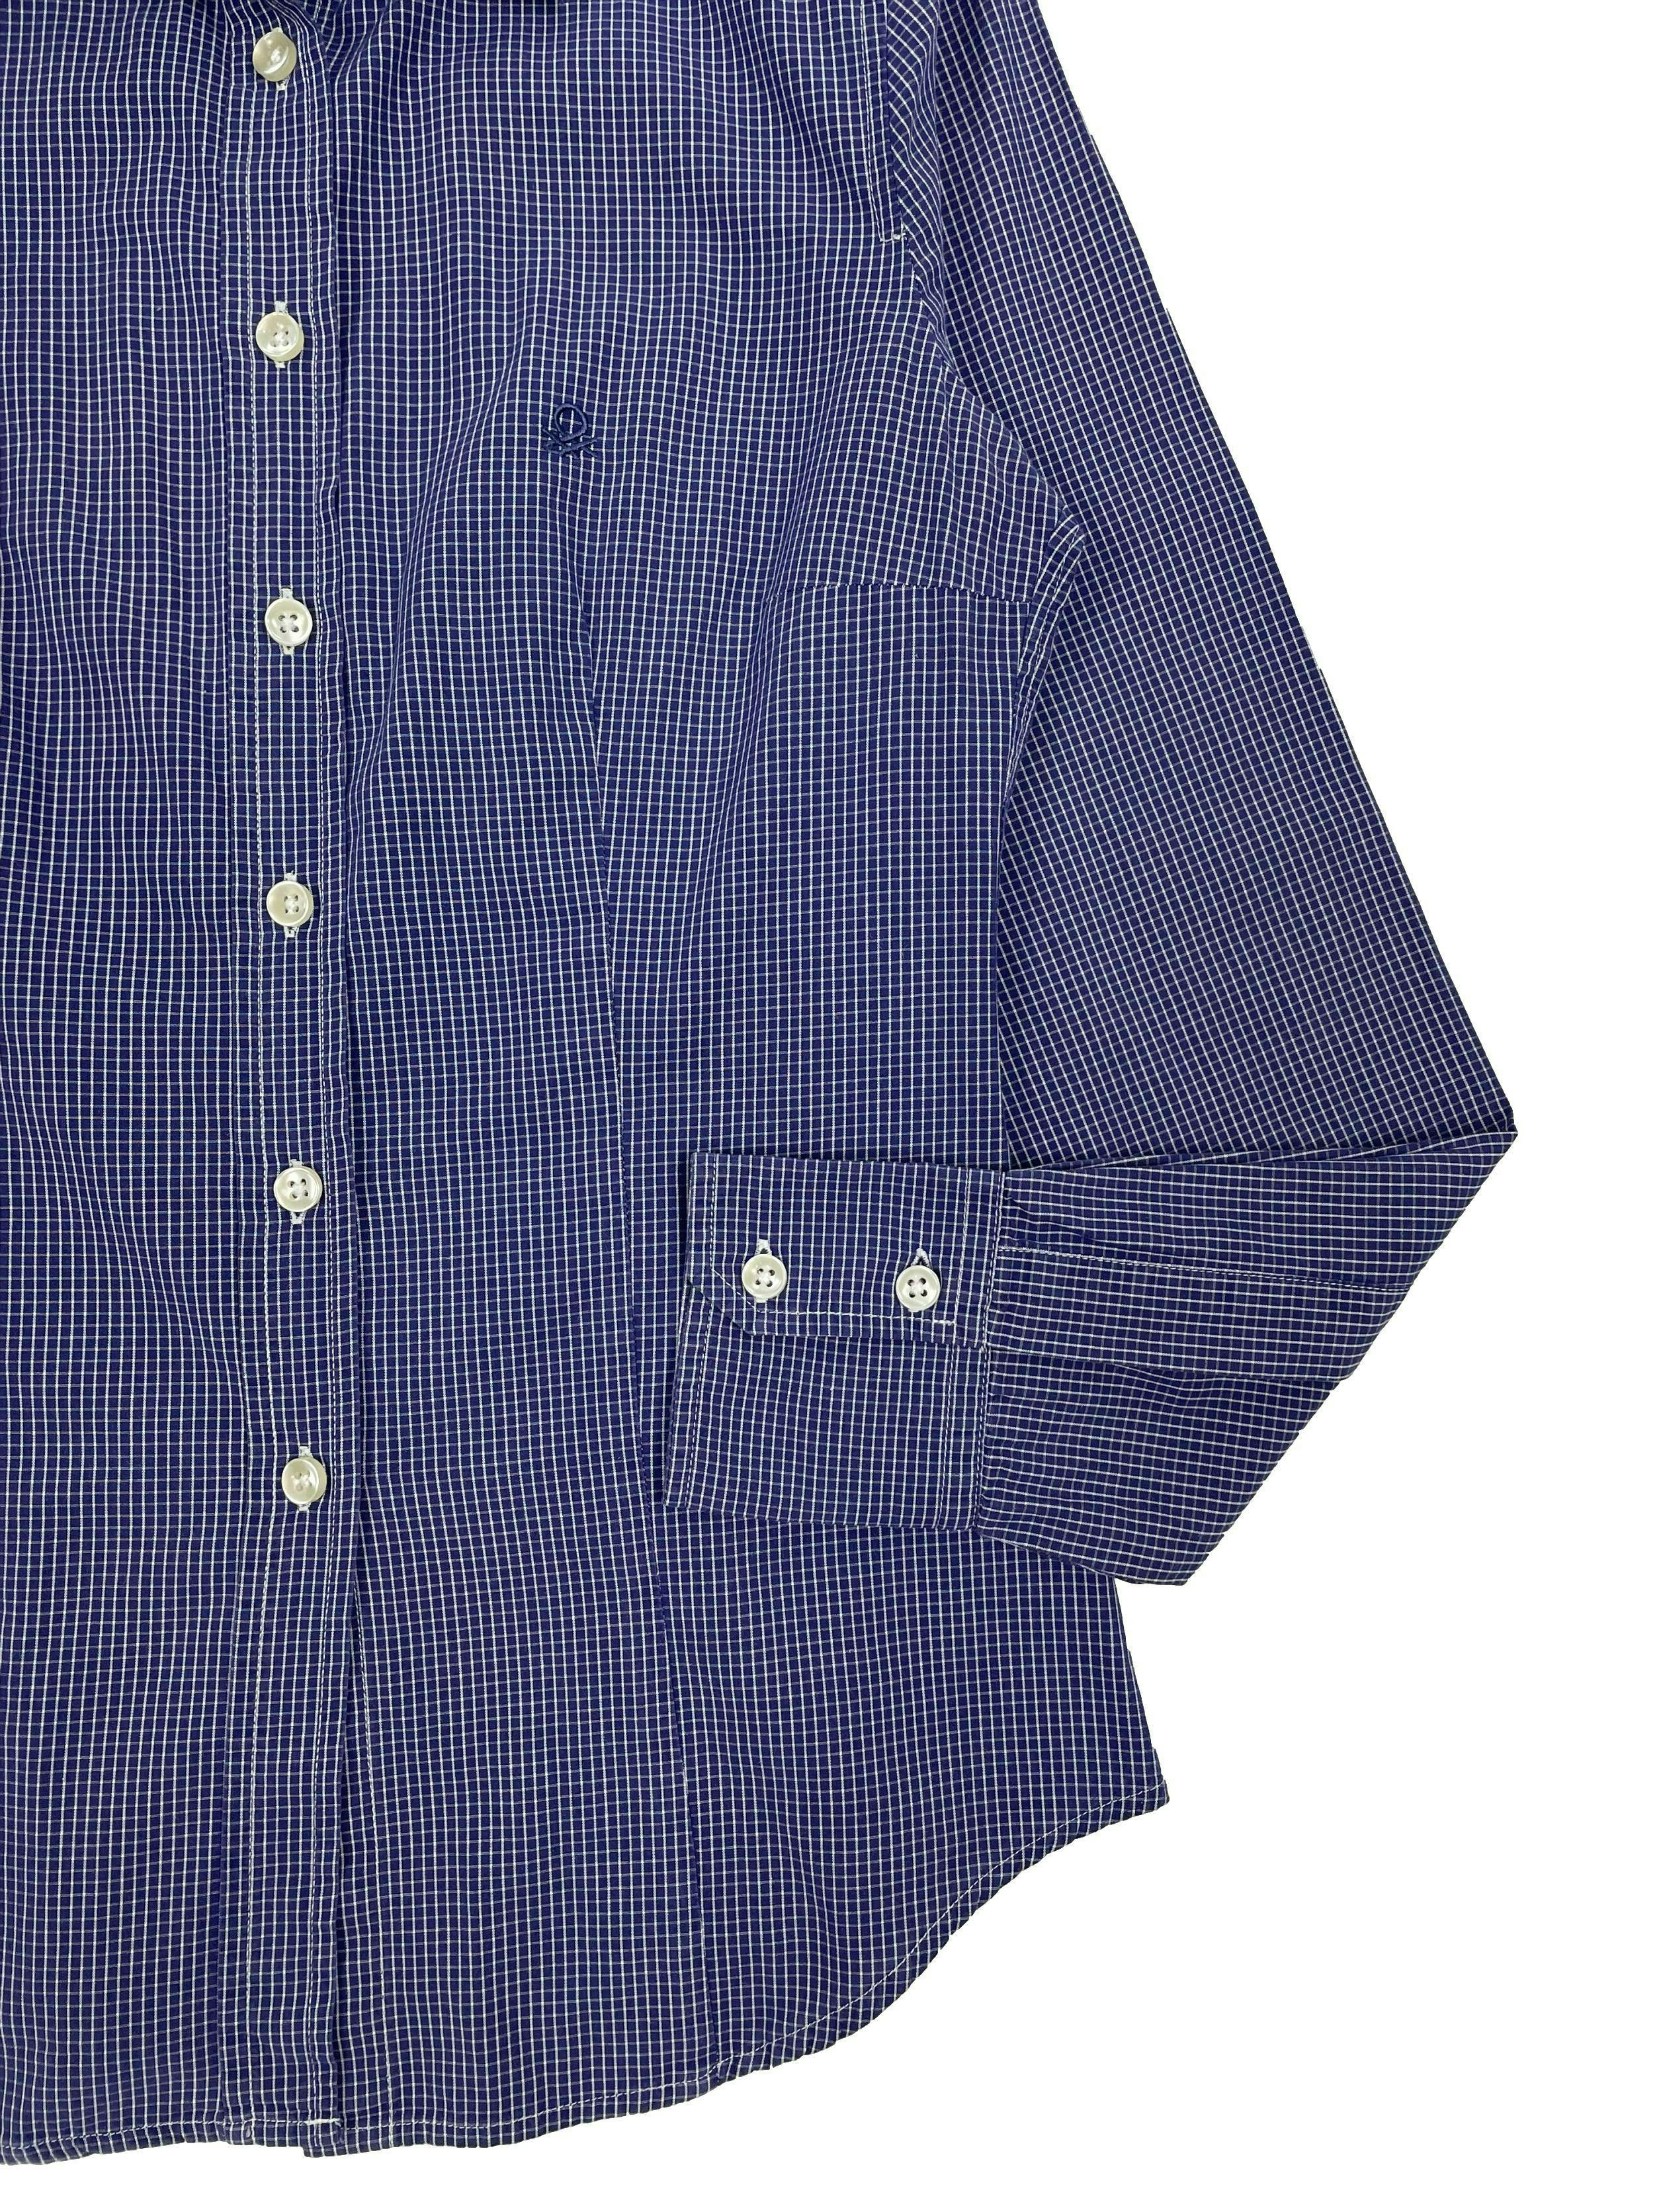 Blusa Benetton a cuadros azul y blanco, corte recto con pinzas en busto, cuello solapa y botones perlados. Busto 86cm, Largo 52cm.